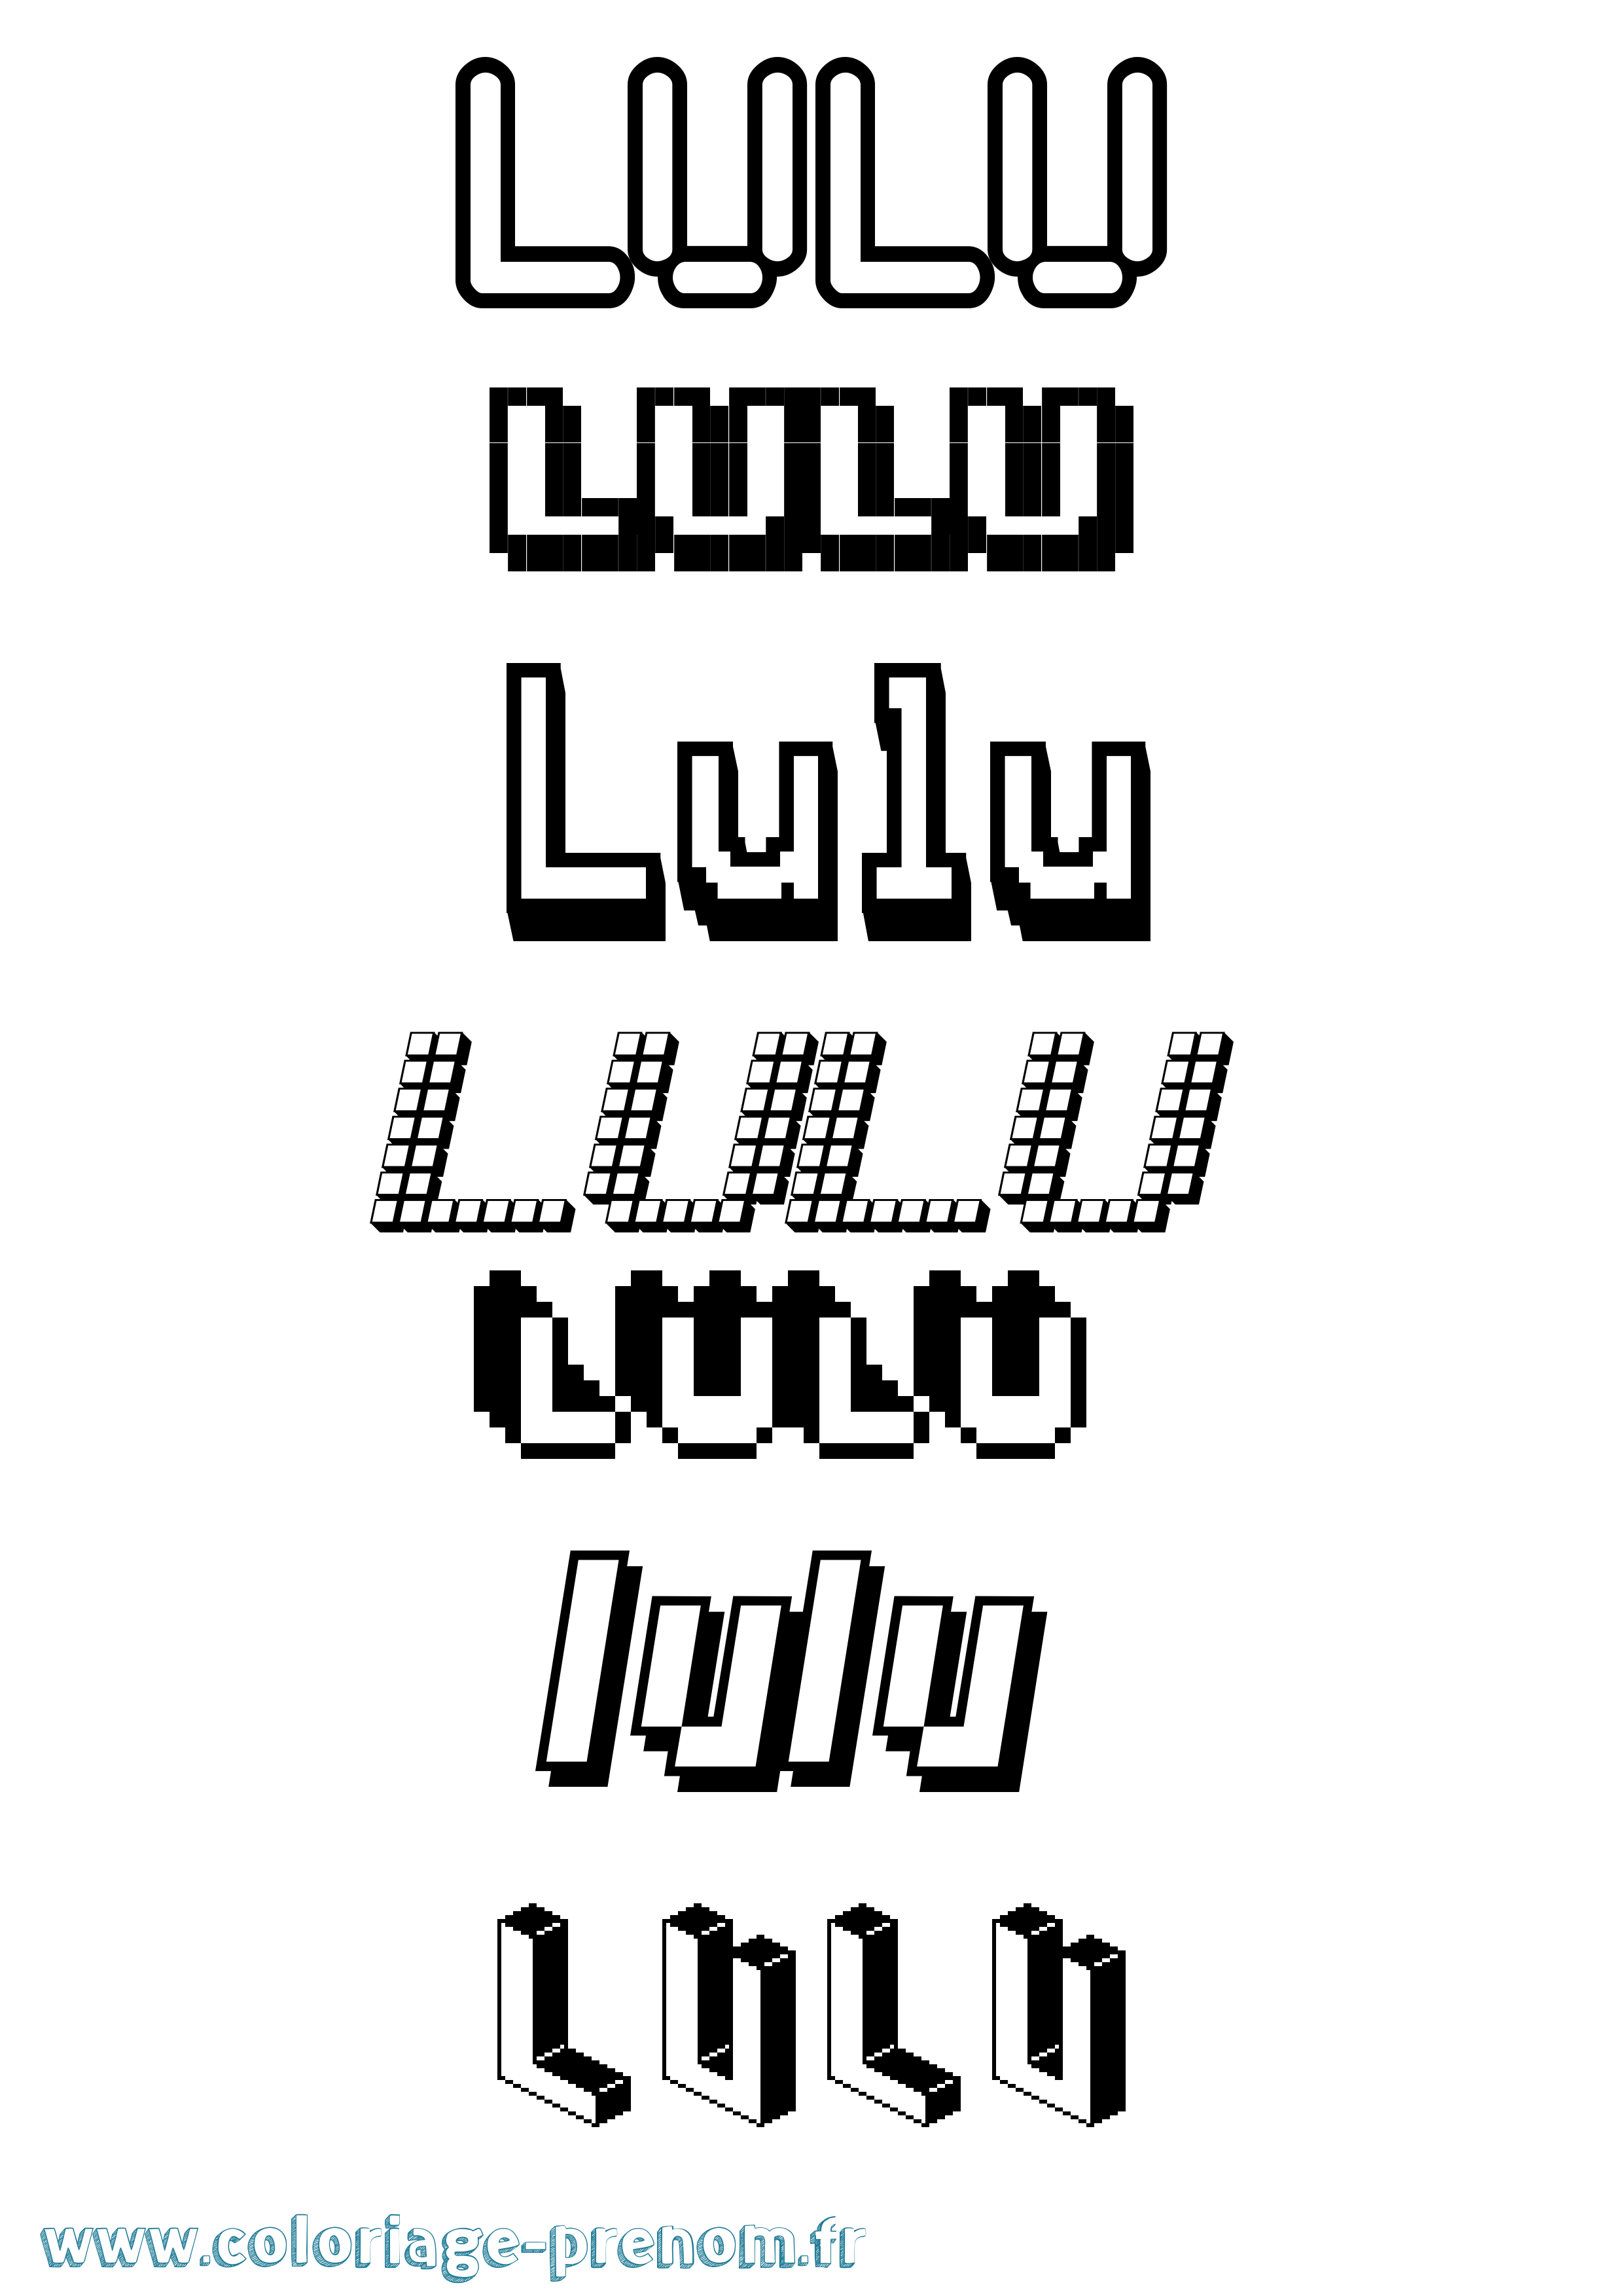 Coloriage prénom Lulu Pixel